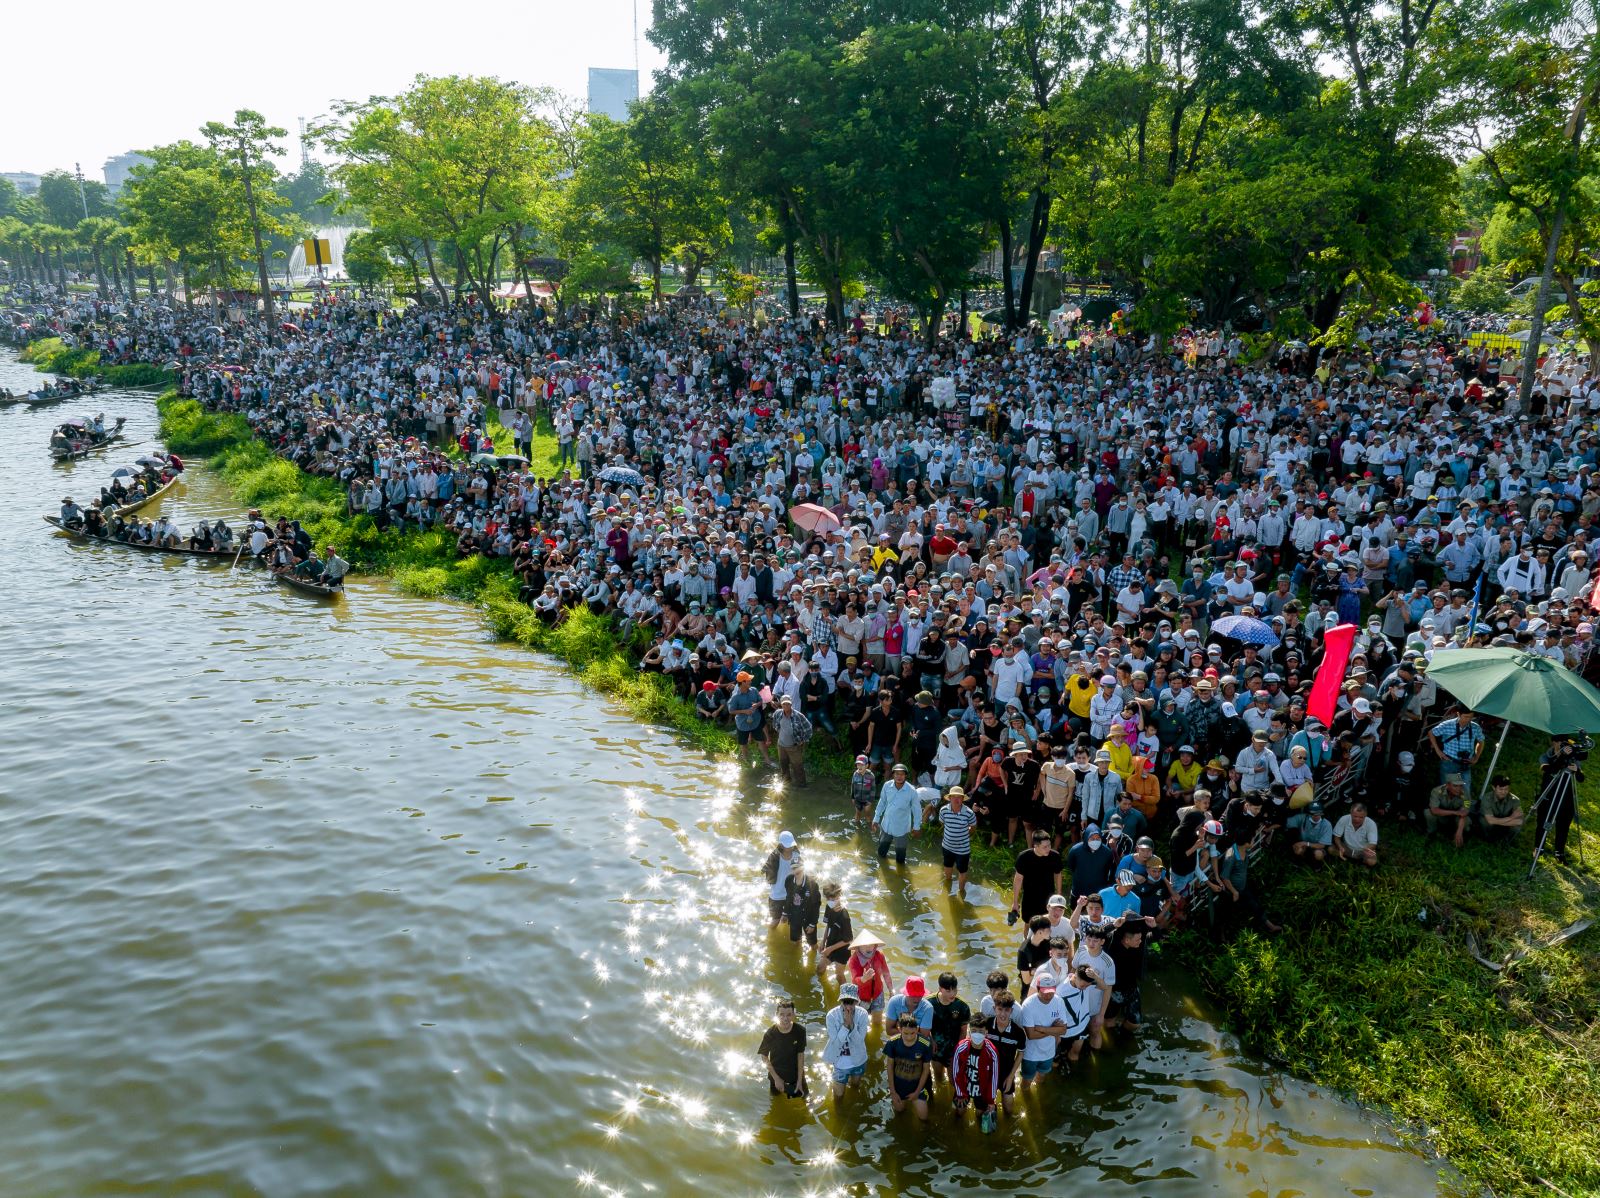 Hàng nghìn người dân cùng du khách hội tụ về cùng reo hò náo nhiệt ở hai bên bờ sông Hương để cổ vũ cho những tay chèo.